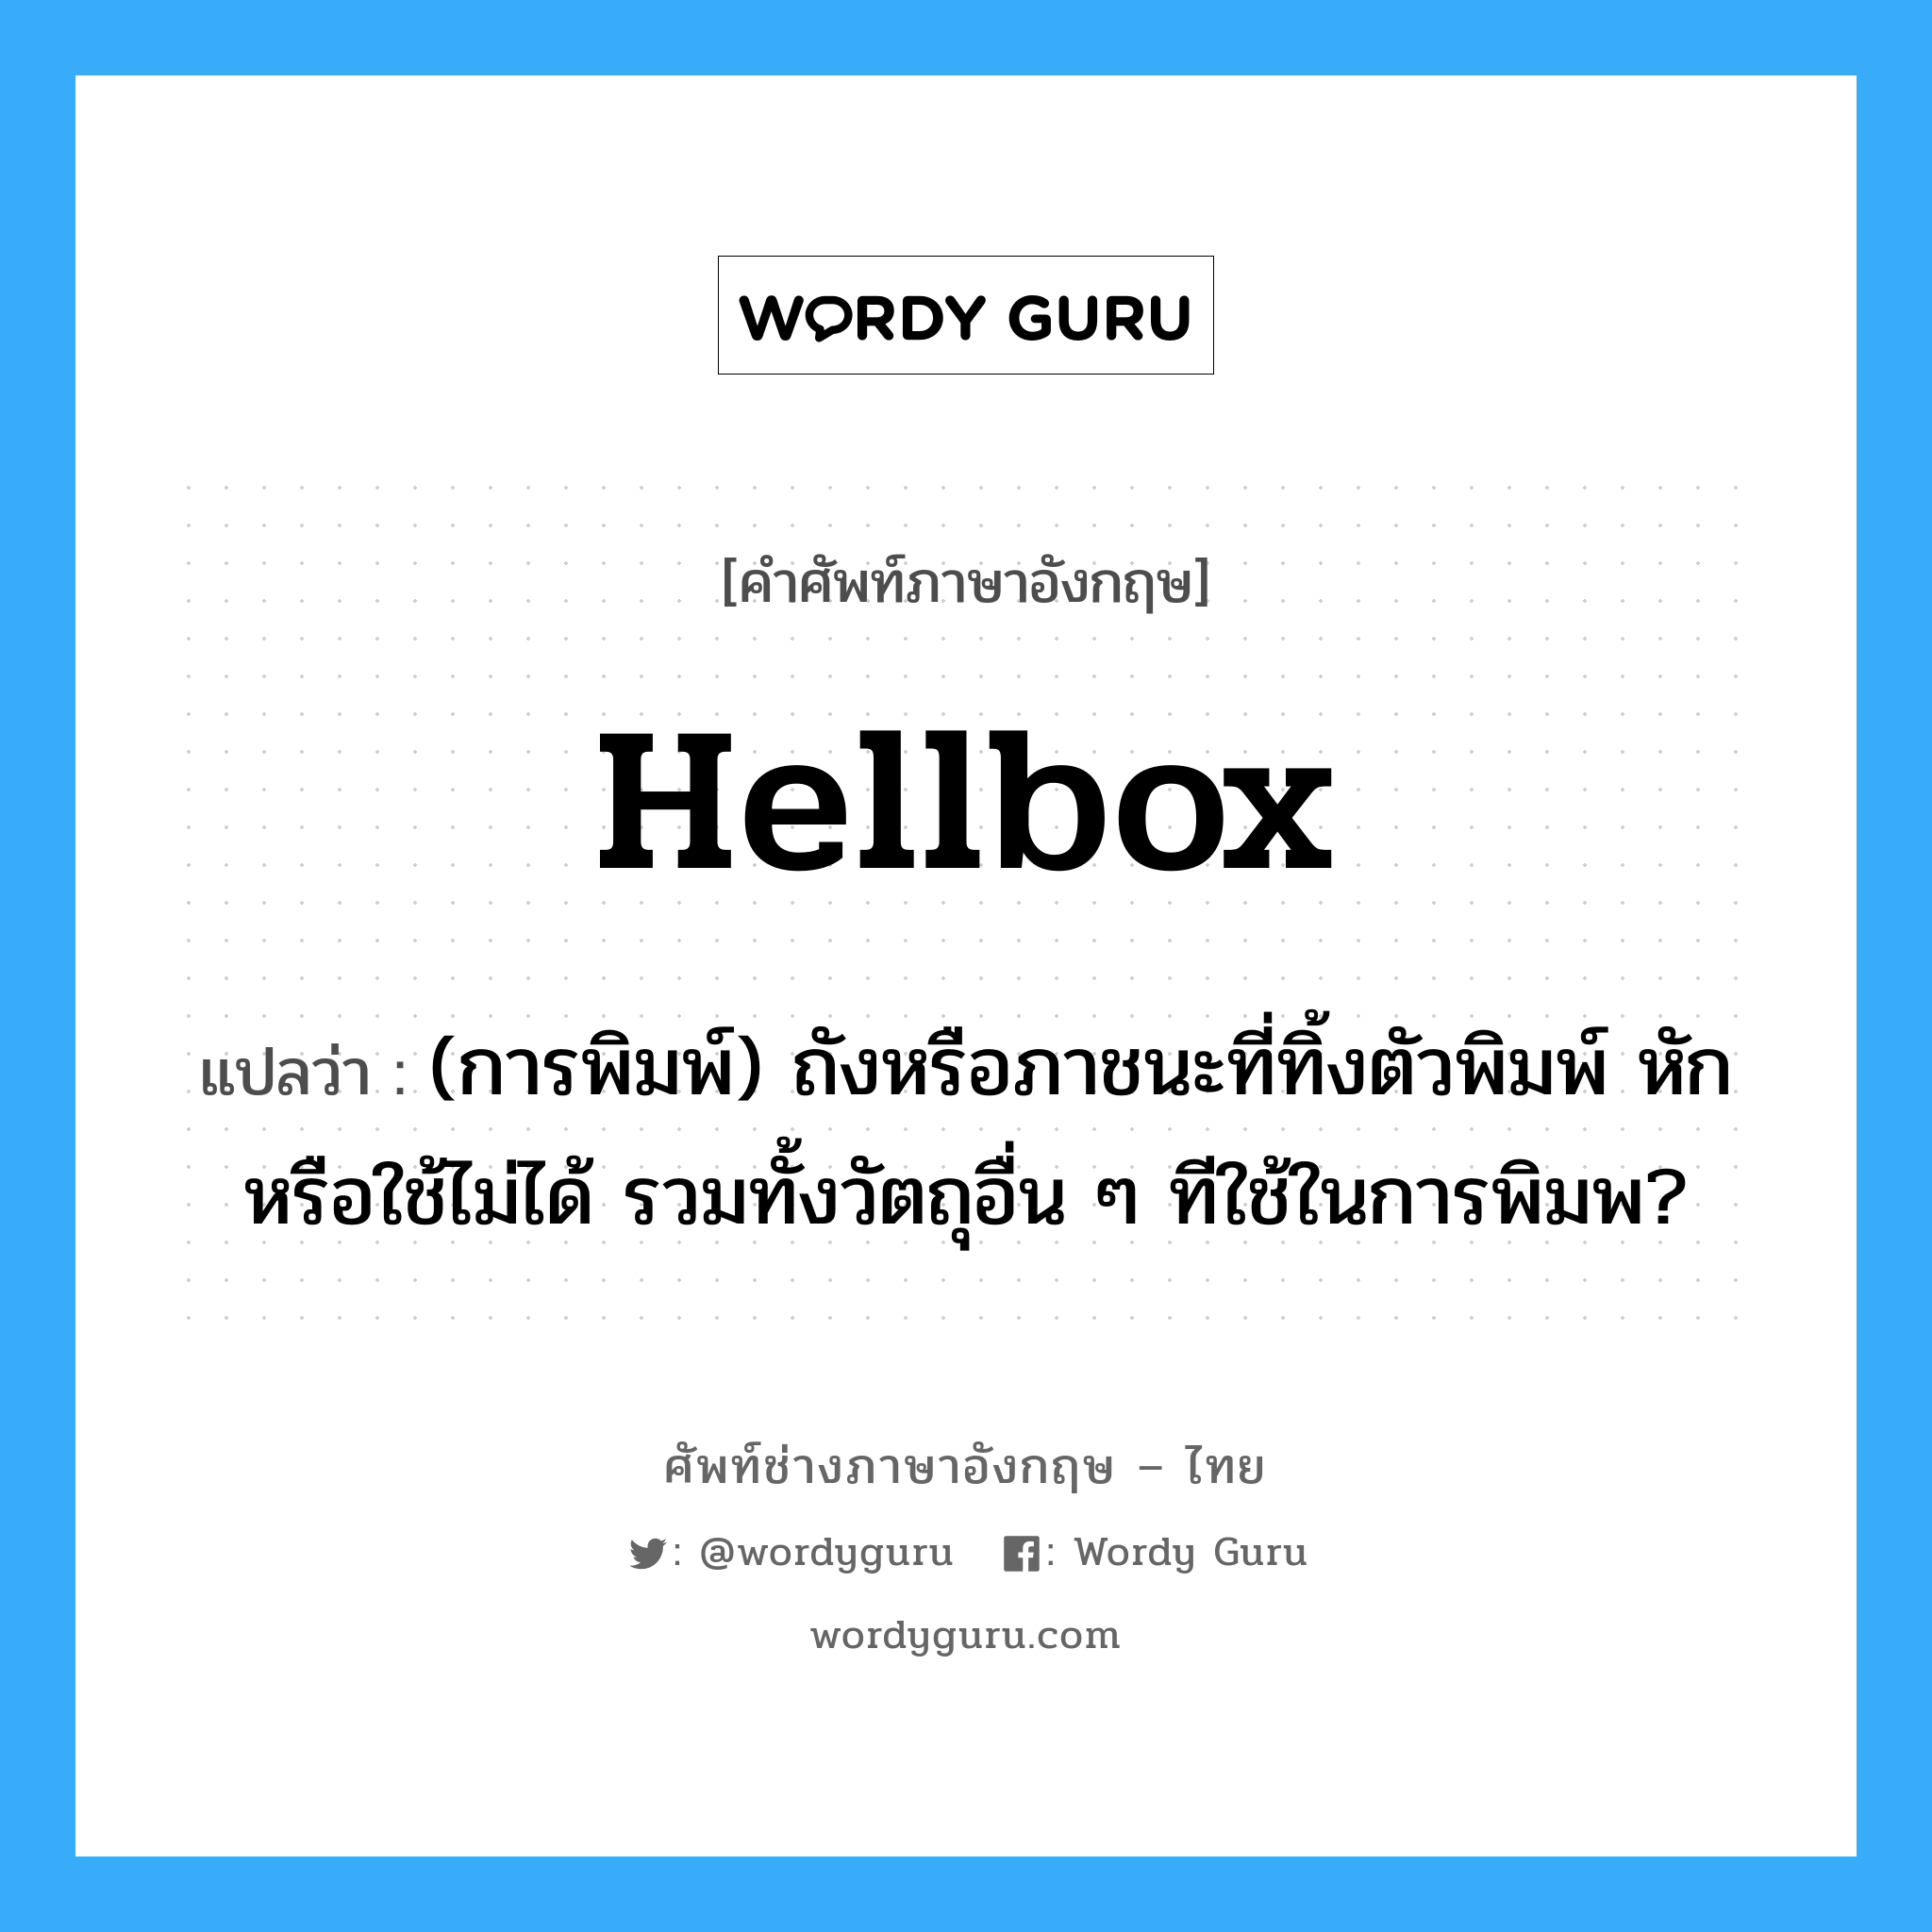 hellbox แปลว่า?, คำศัพท์ช่างภาษาอังกฤษ - ไทย hellbox คำศัพท์ภาษาอังกฤษ hellbox แปลว่า (การพิมพ์) ถังหรือภาชนะที่ทิ้งตัวพิมพ์ หักหรือใช้ไม่ได้ รวมทั้งวัตถุอื่น ๆ ทีใช้ในการพิมพ?